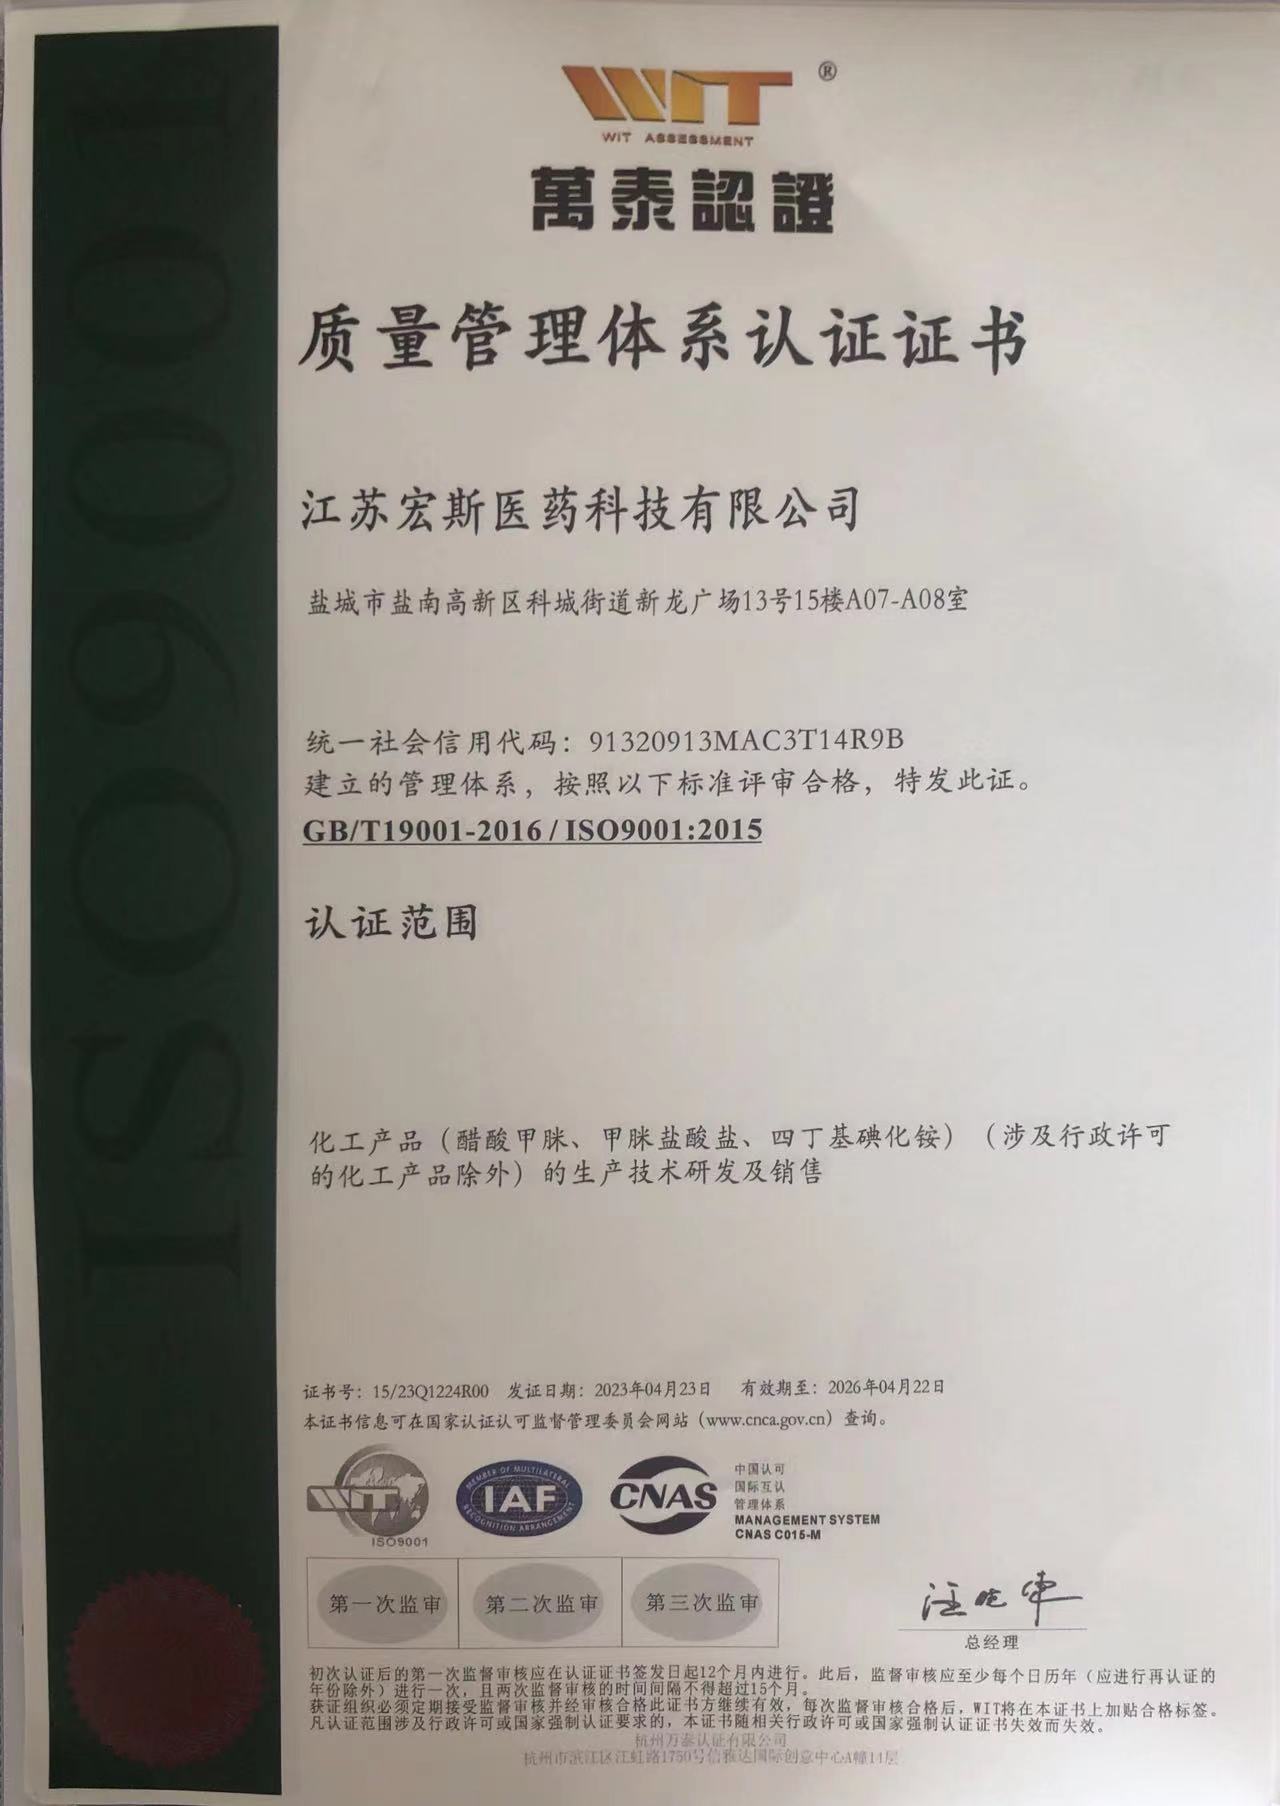 חוגגים בחום את Jiangsu Hongsi Medical Technology Co., Ltd. עברה בהצלחה את הסמכת מערכת האיכות הבינלאומית ISO9001:2015